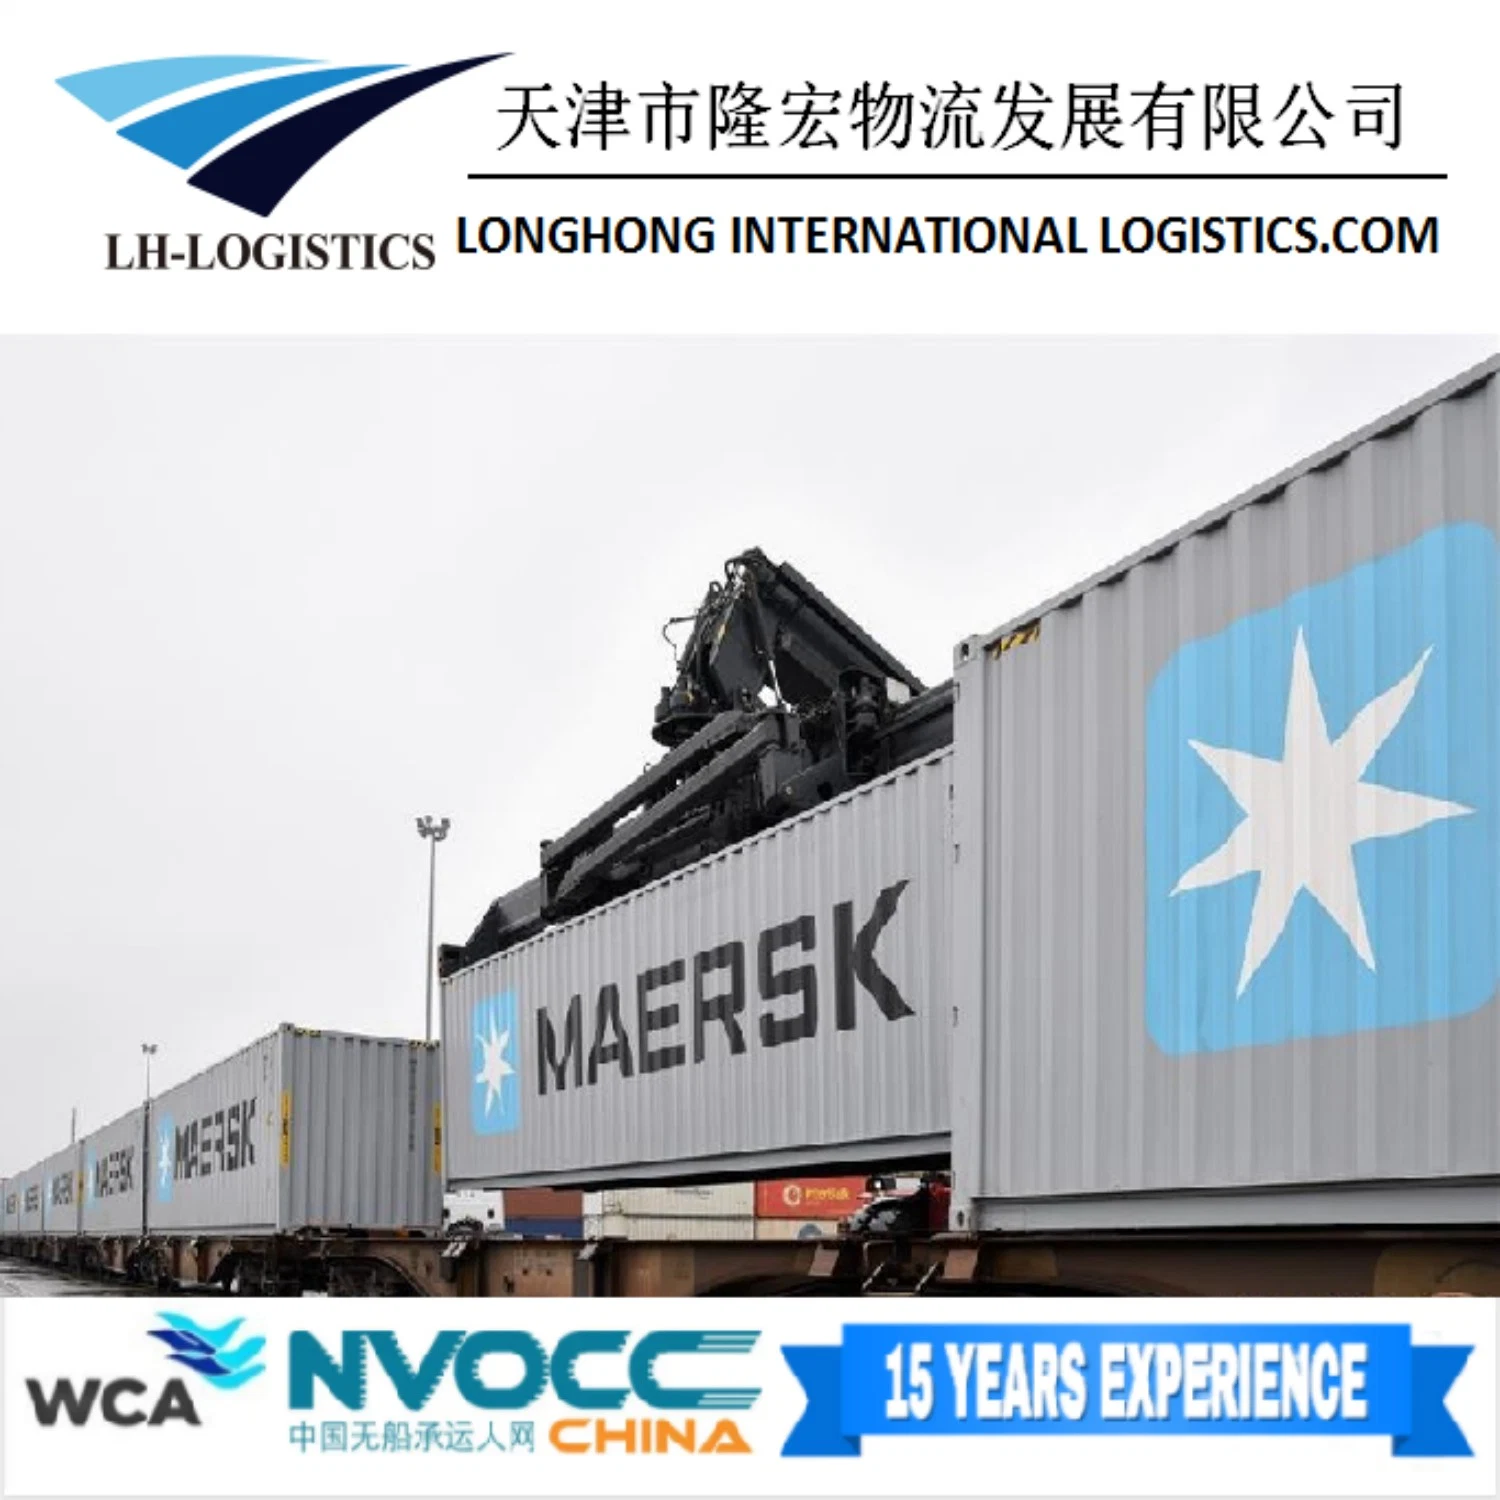 Professional Air/Sea Freight Forwarder Shipping From Shanghai to Callao Peru, Honduras